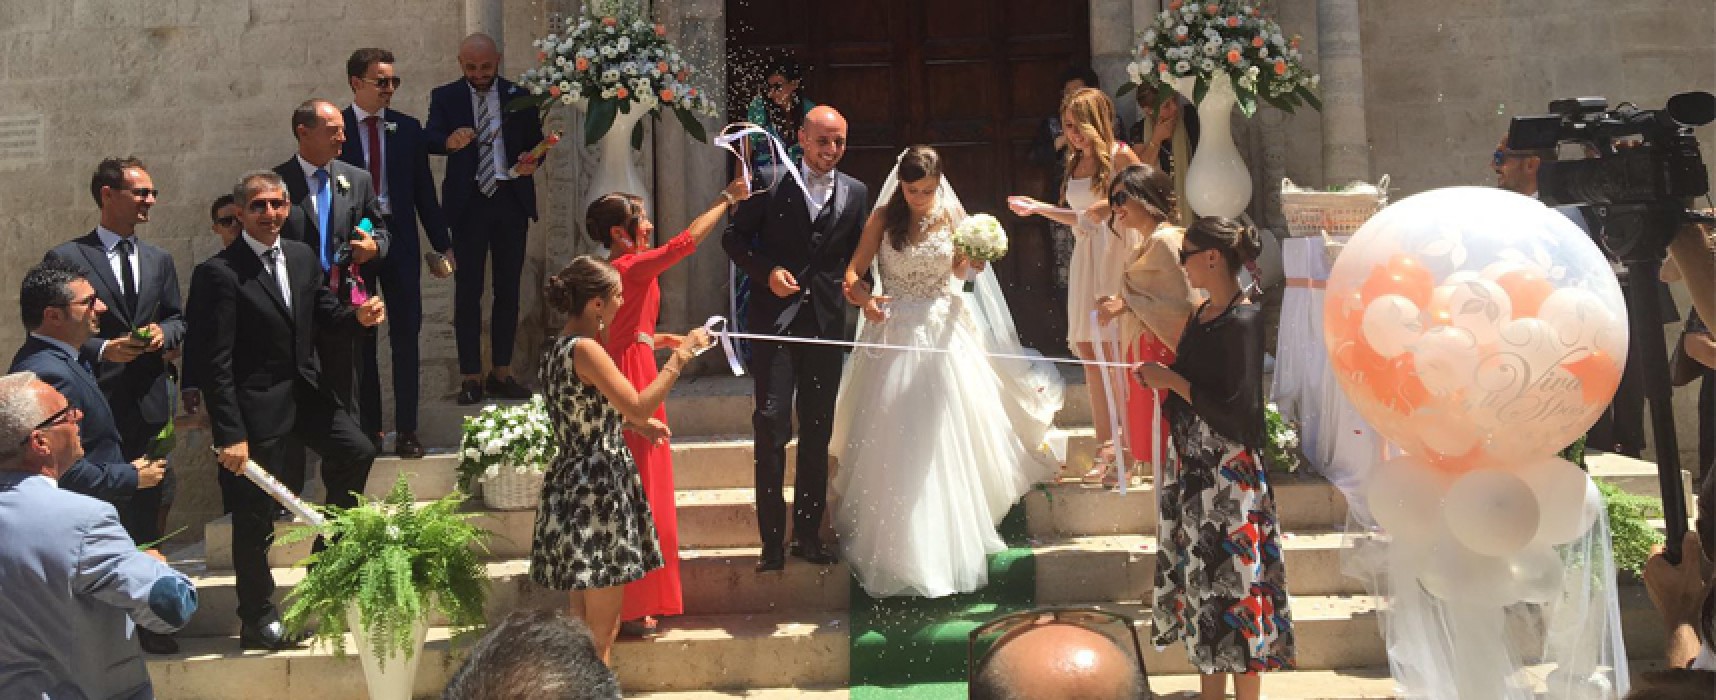 Alessandro e Vanessa sposi… e da Siena arrivano gli auguri “Aquilini” / VIDEO